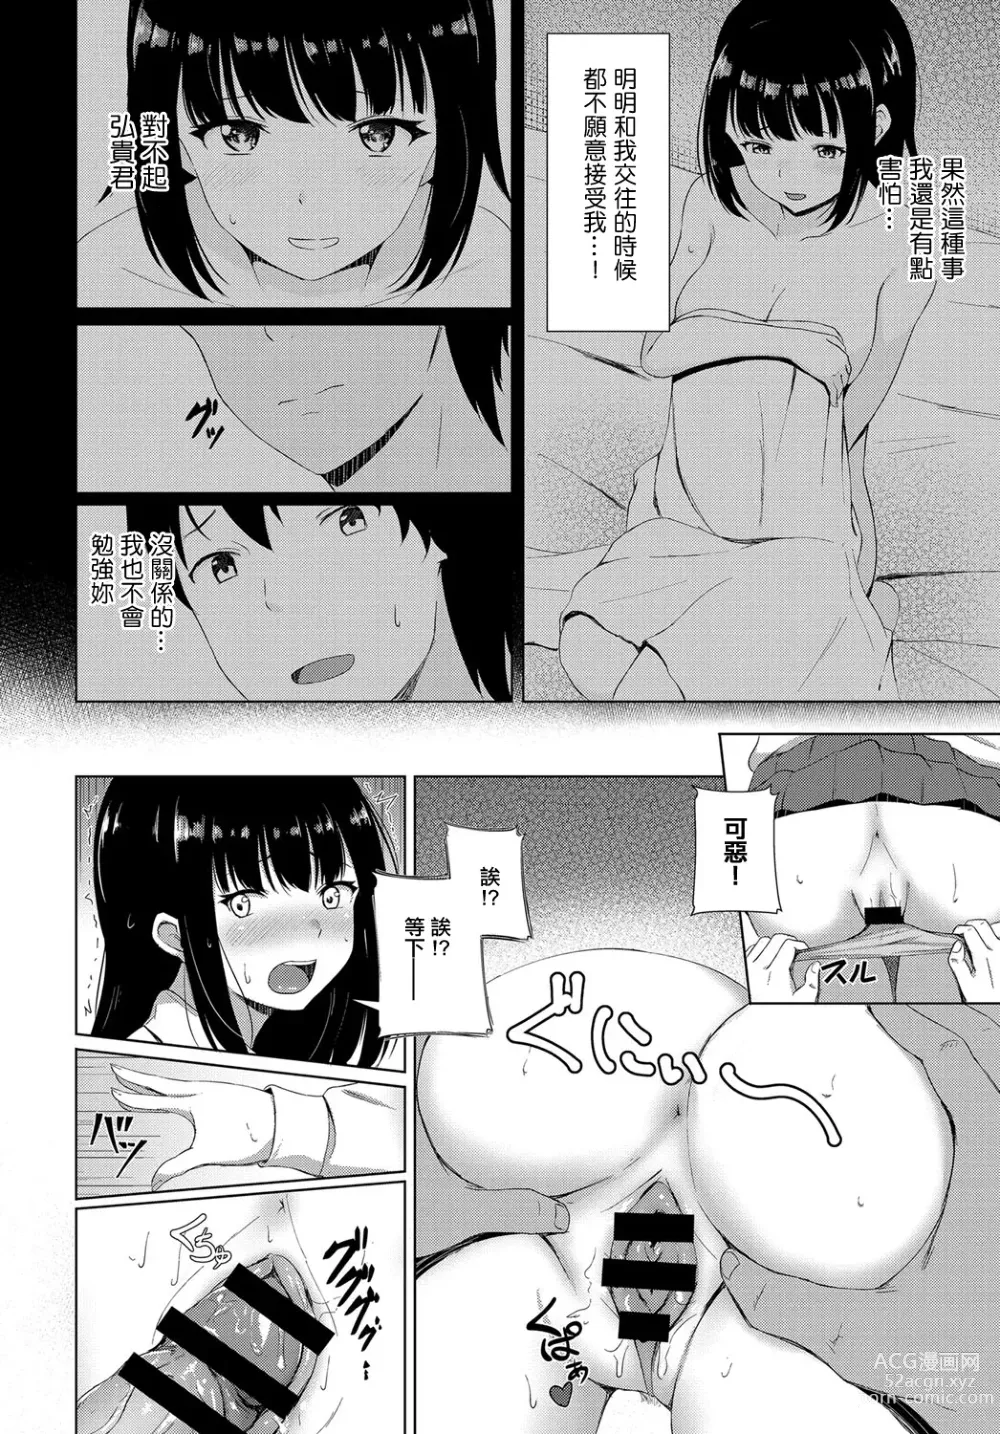 Page 10 of manga Zankyou